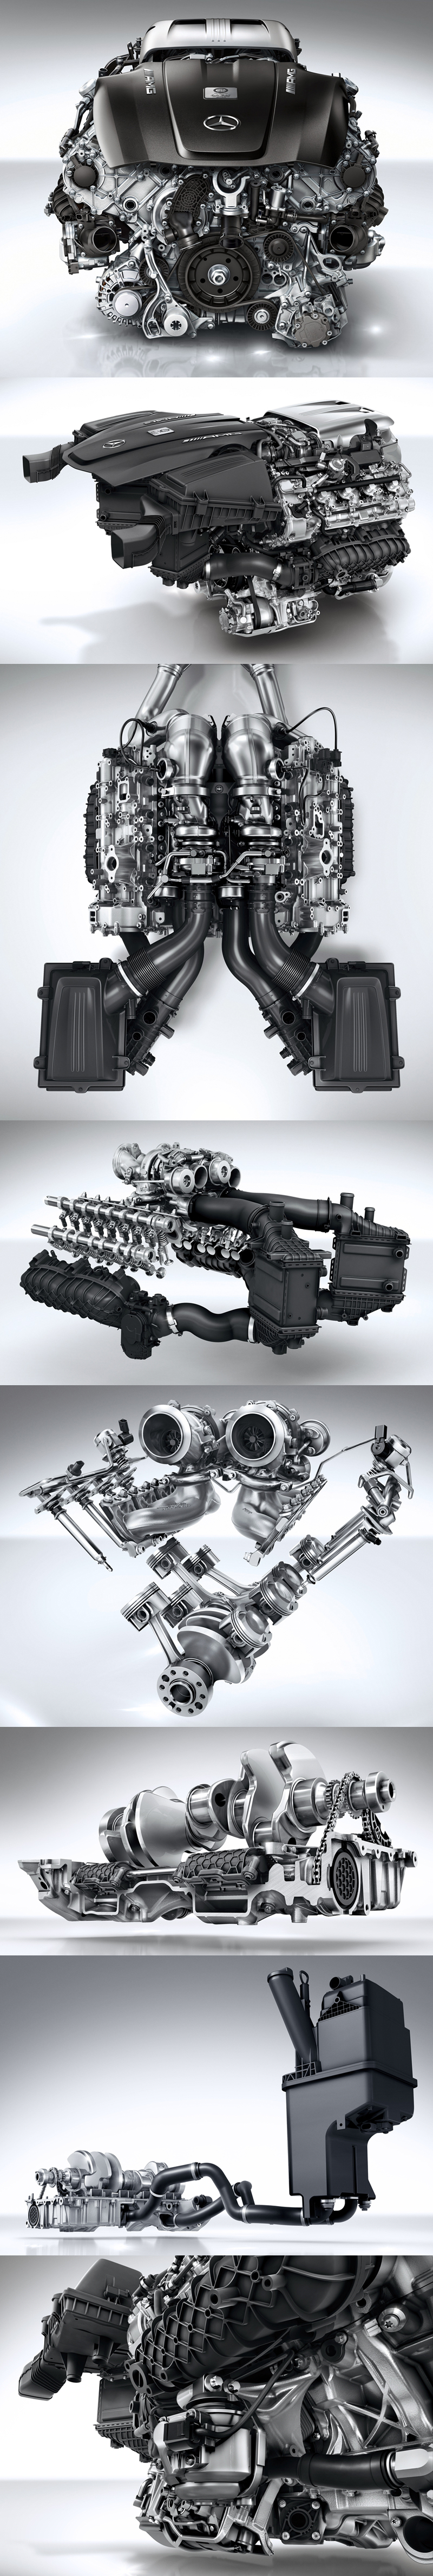 2015_08_Mercedes_Benz_AMG_GT_S_Engine_02